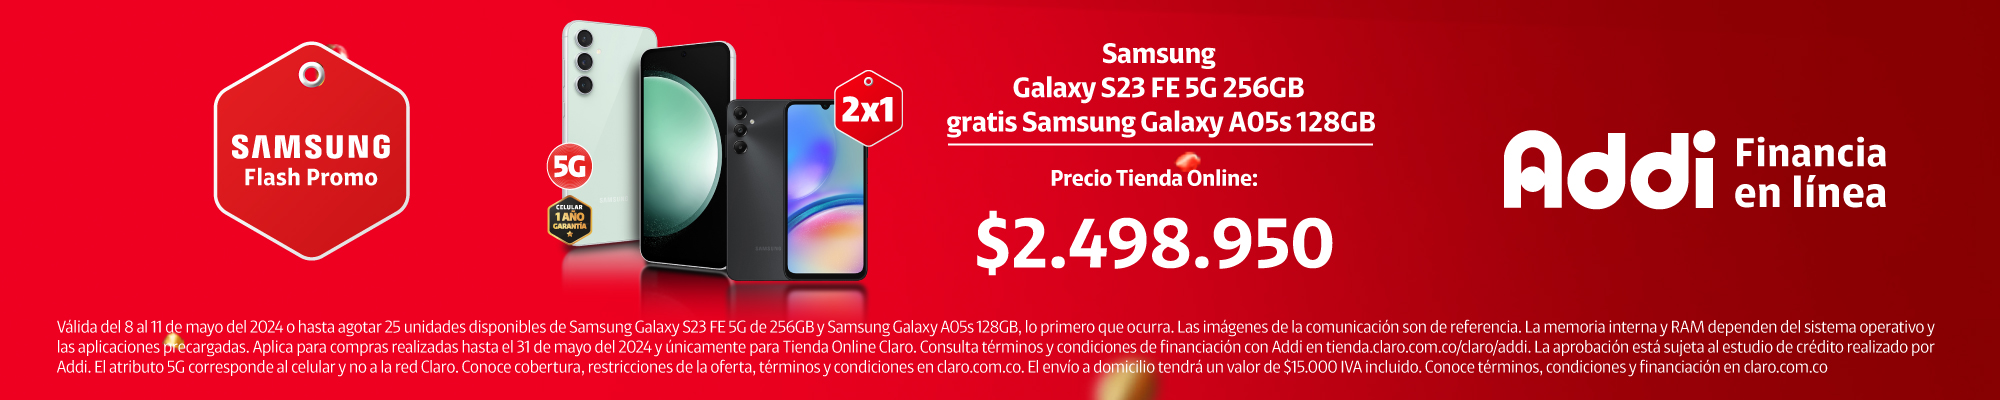 Samsung Galaxy S23 FE 256GB 5G